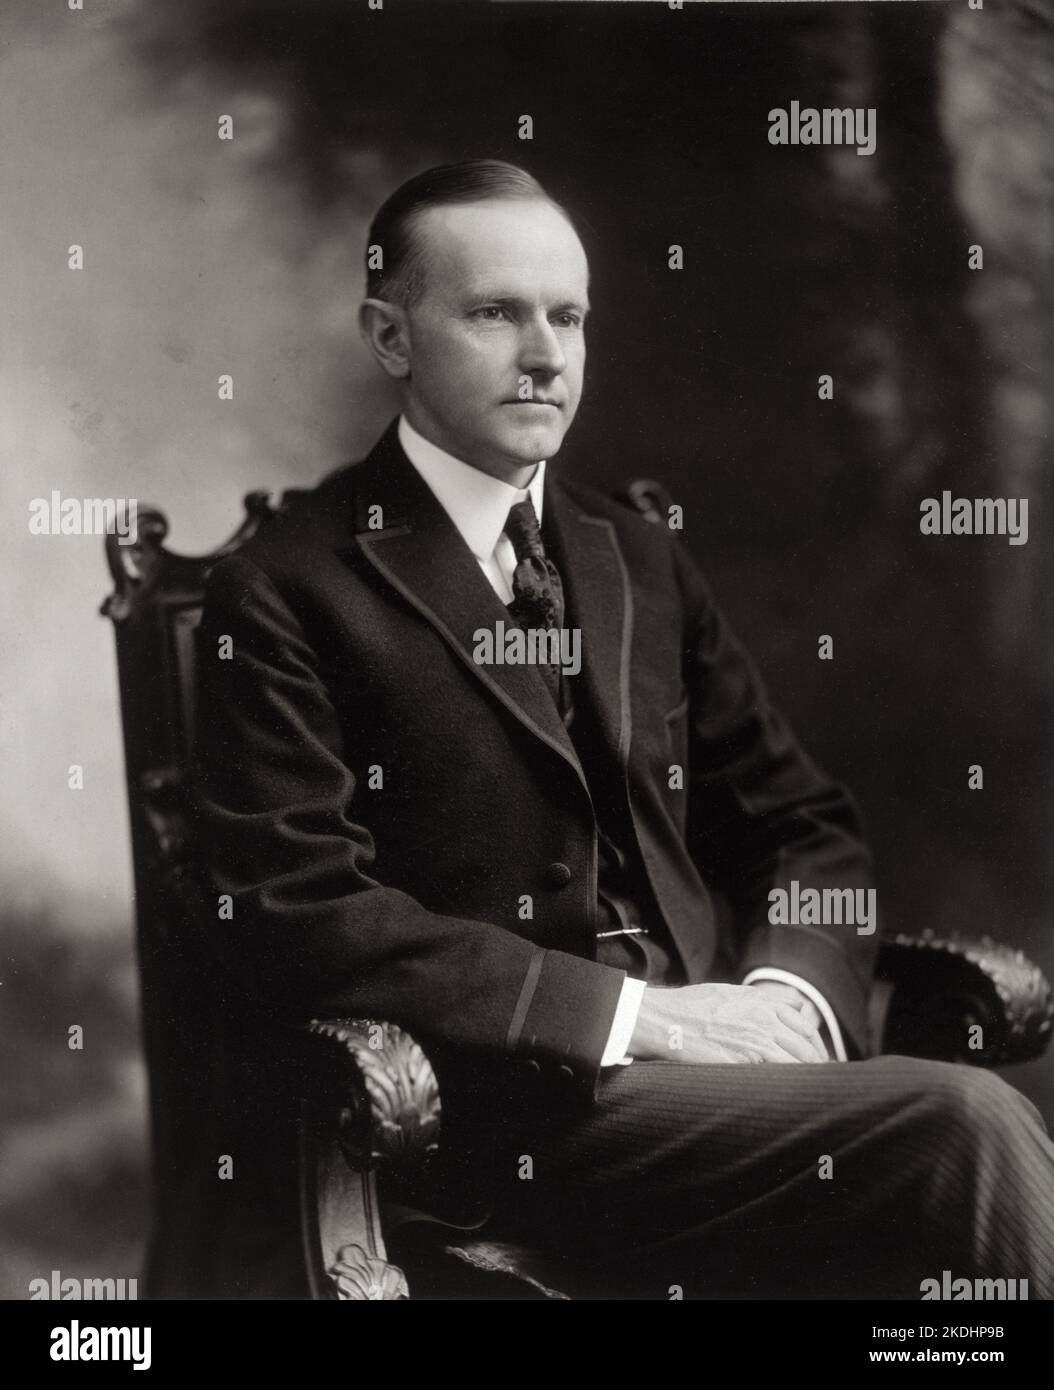 Ein Porträt des US-Präsidenten Calvin Coolidge von 1919, als er Gouverneur von Massachusetts war Stockfoto